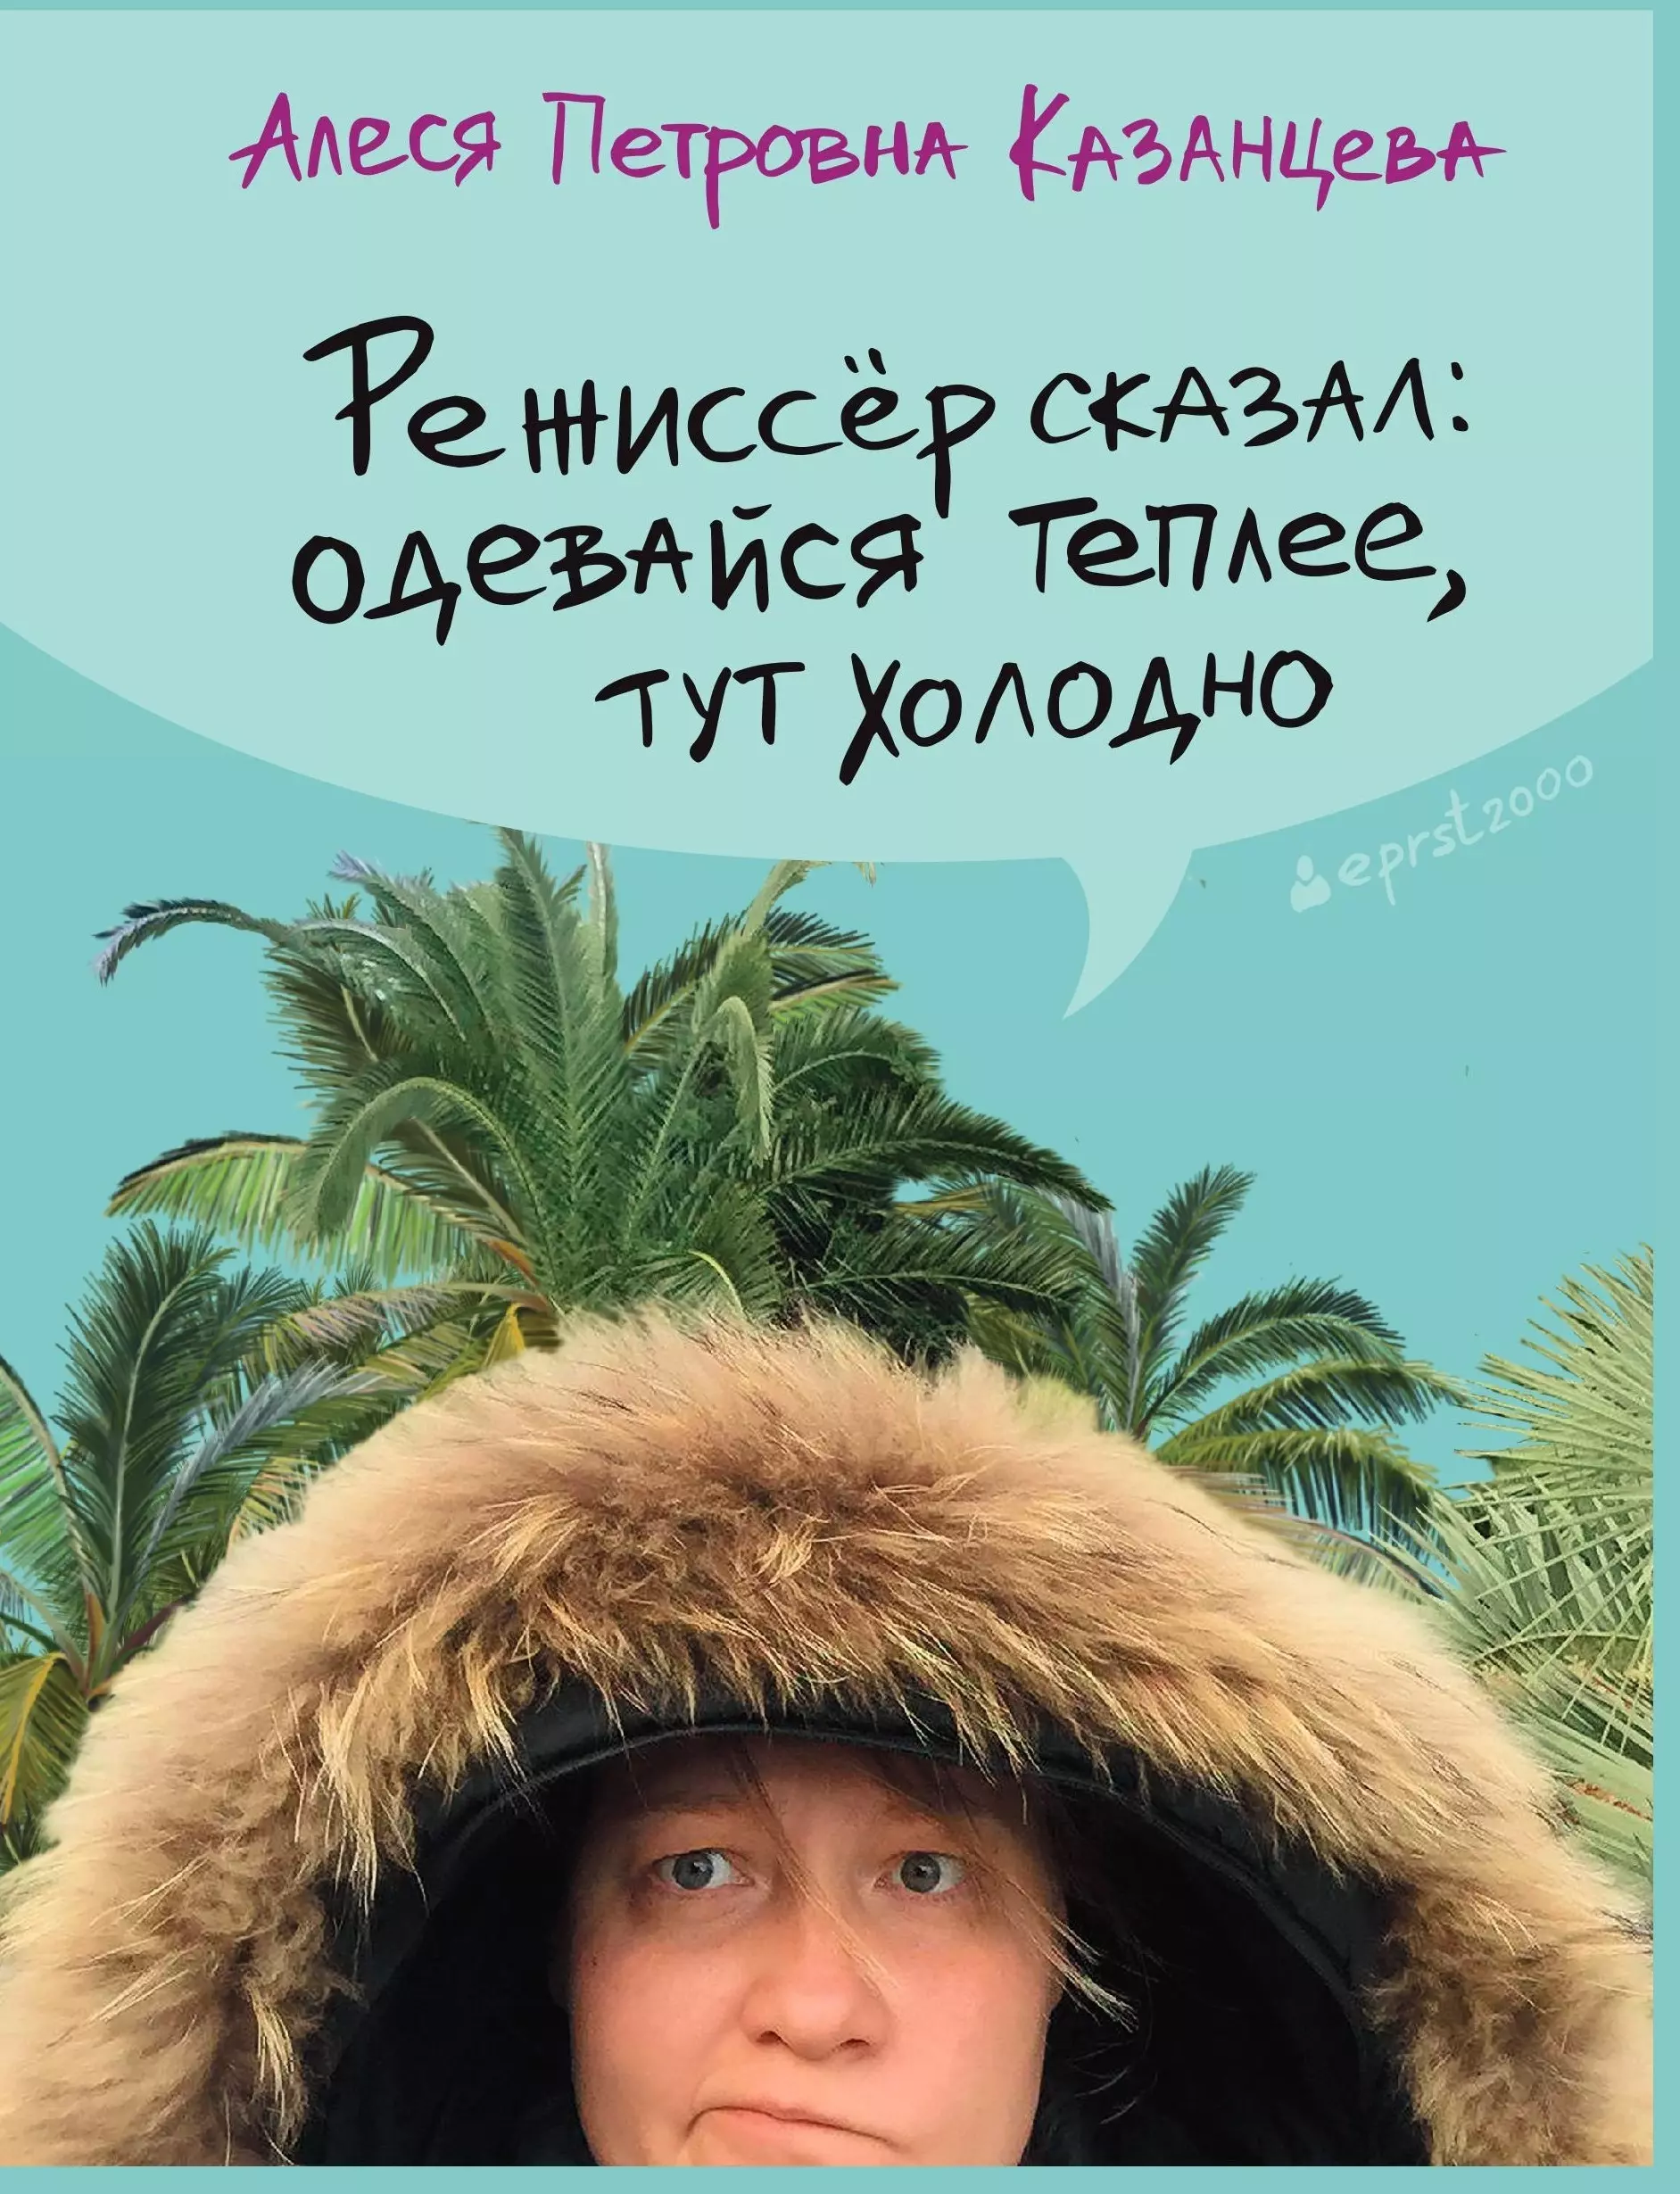 Казанцева Алеся Петровна Режиссер сказал: одевайся теплее, тут холодно режиссер сказал одевайся теплее тут холодно казанцева а